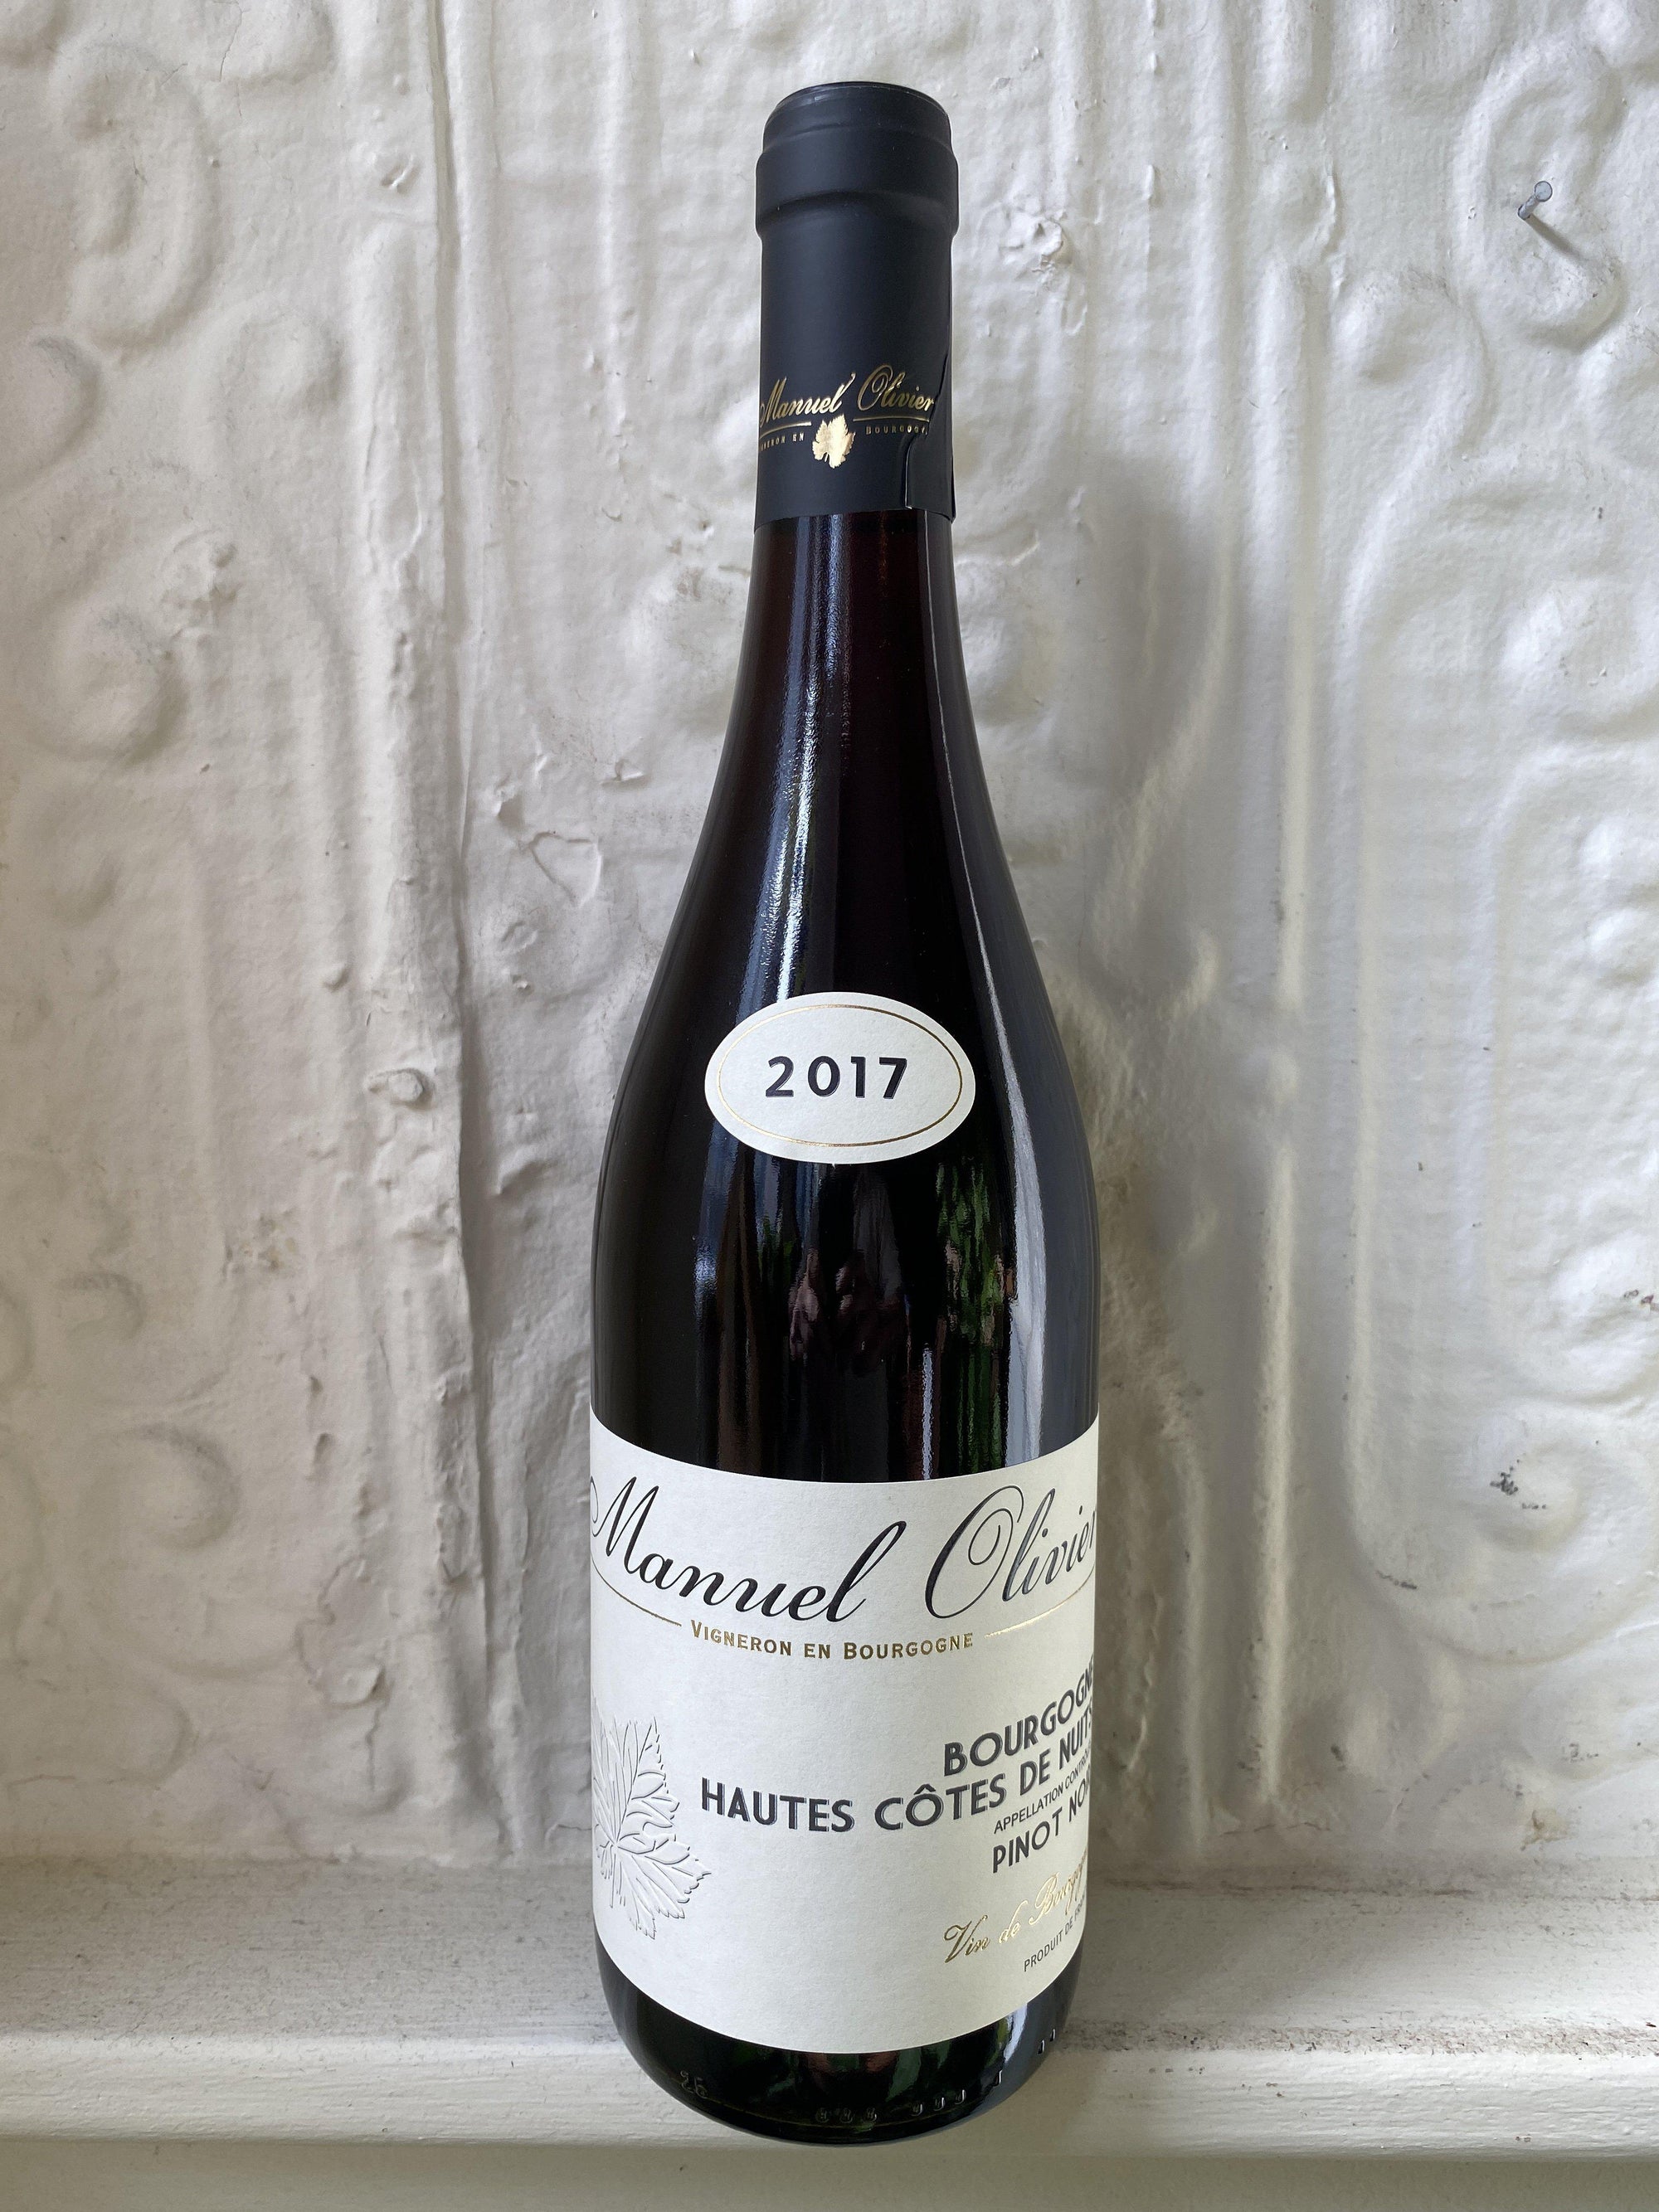 Pinot Noir Hautes Cotes de Nuits, Manuel Olivier 2017 (Burgundy, France)-Wine-Bibber & Bell